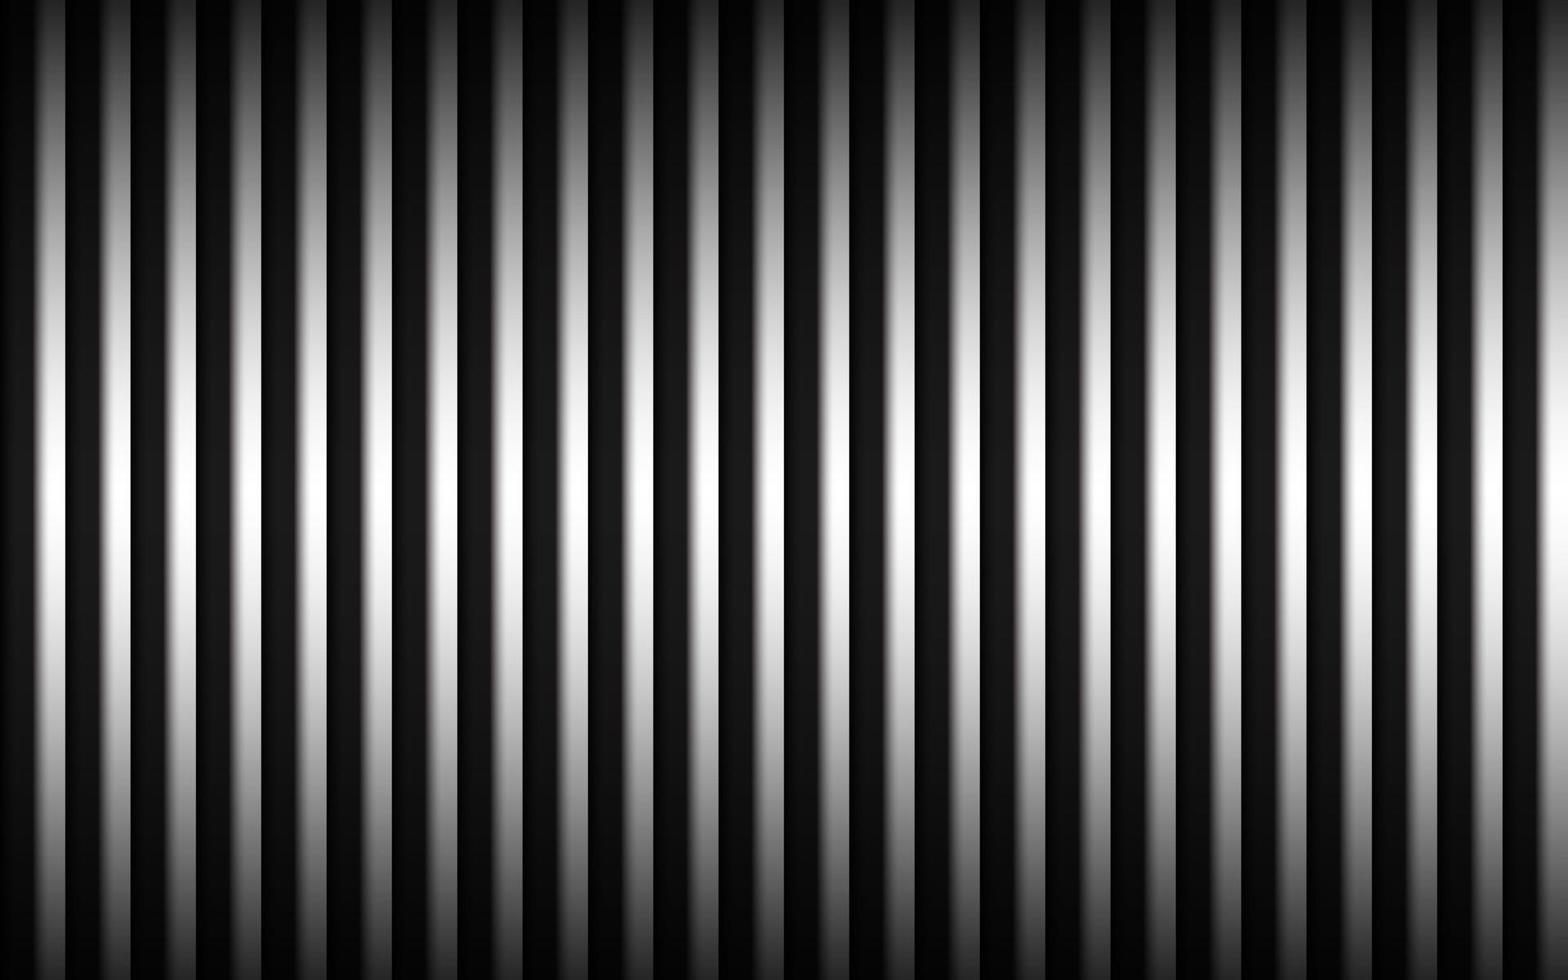 fundo de metal abstrato com linhas verticais em preto e branco, linhas paralelas e ilustração vetorial de tiras vetor